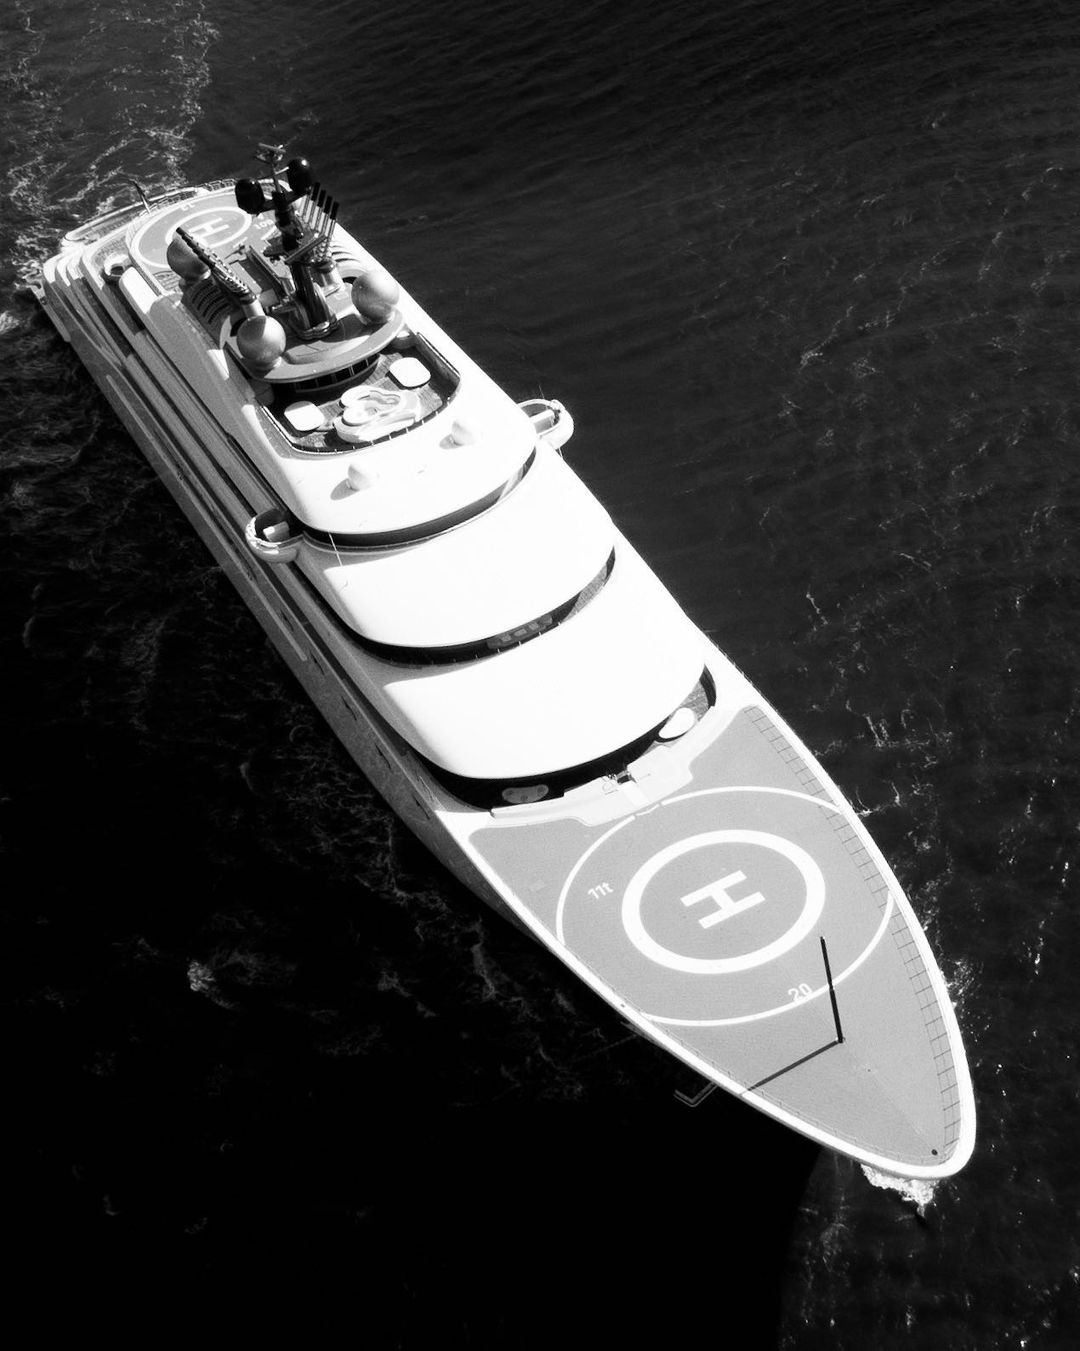 BLUE Yacht - Lurssen - 2022 - Propietario Sheikh Mansour